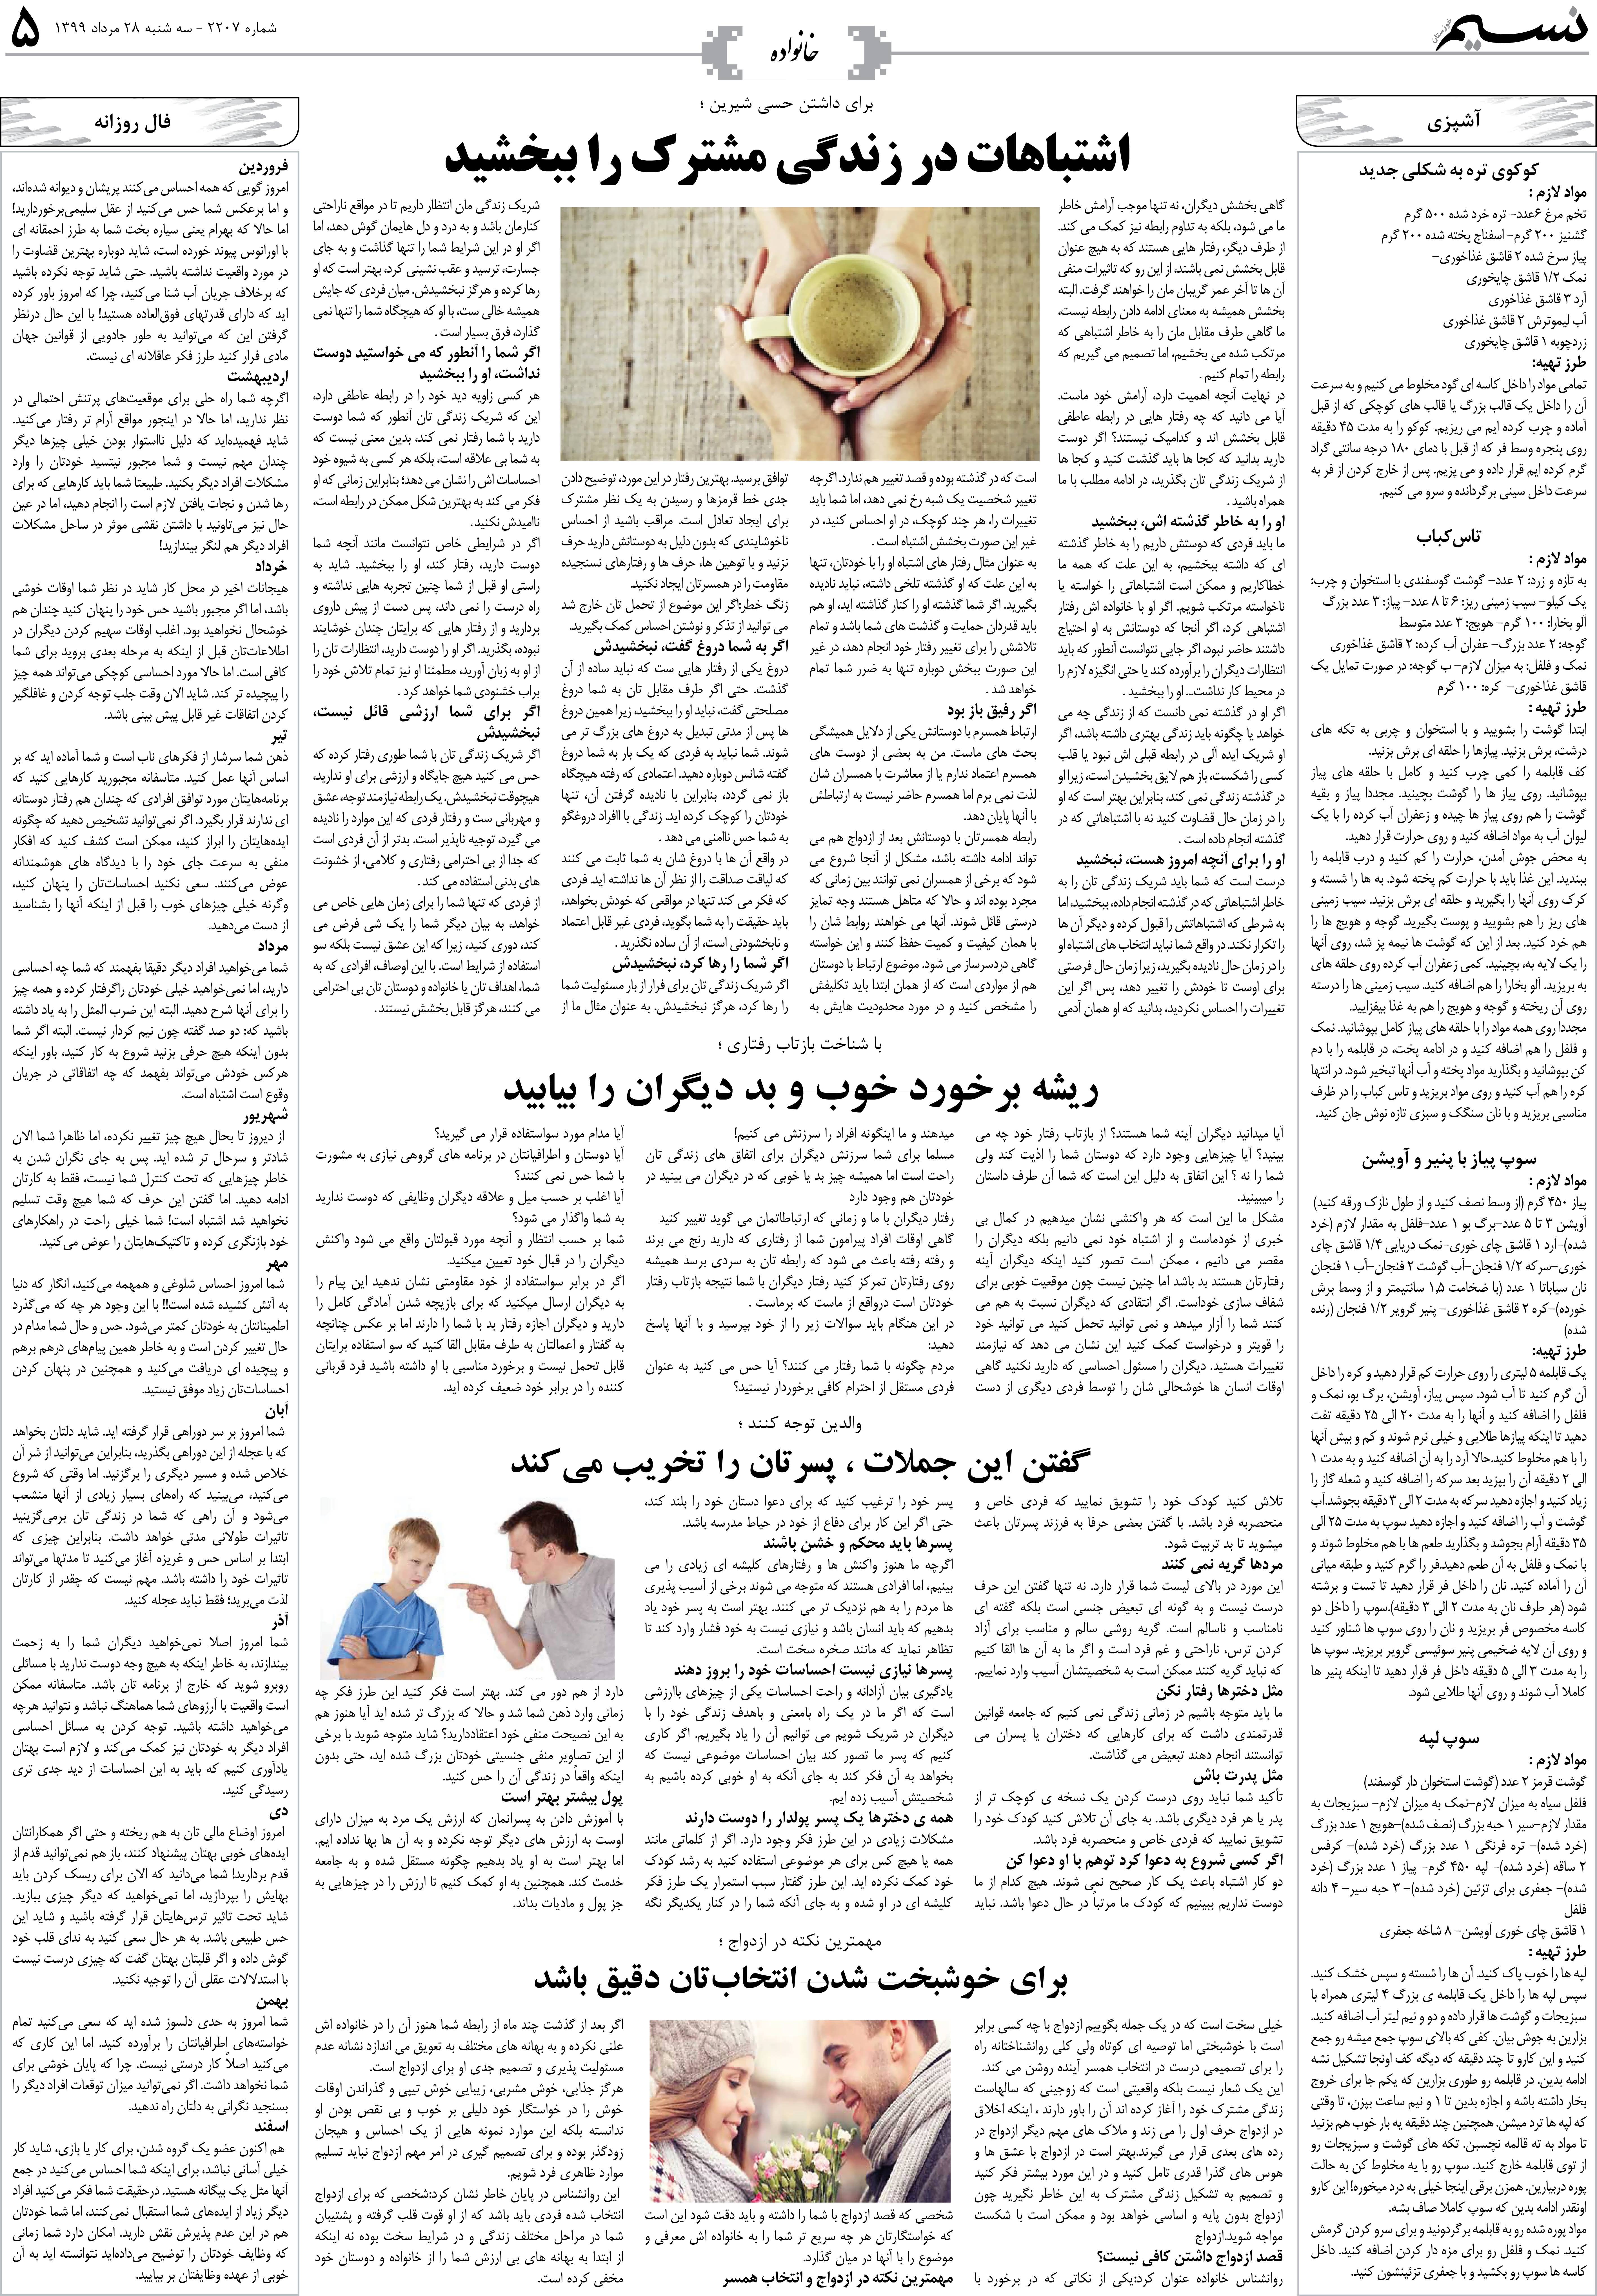 صفحه خانواده روزنامه نسیم شماره 2207